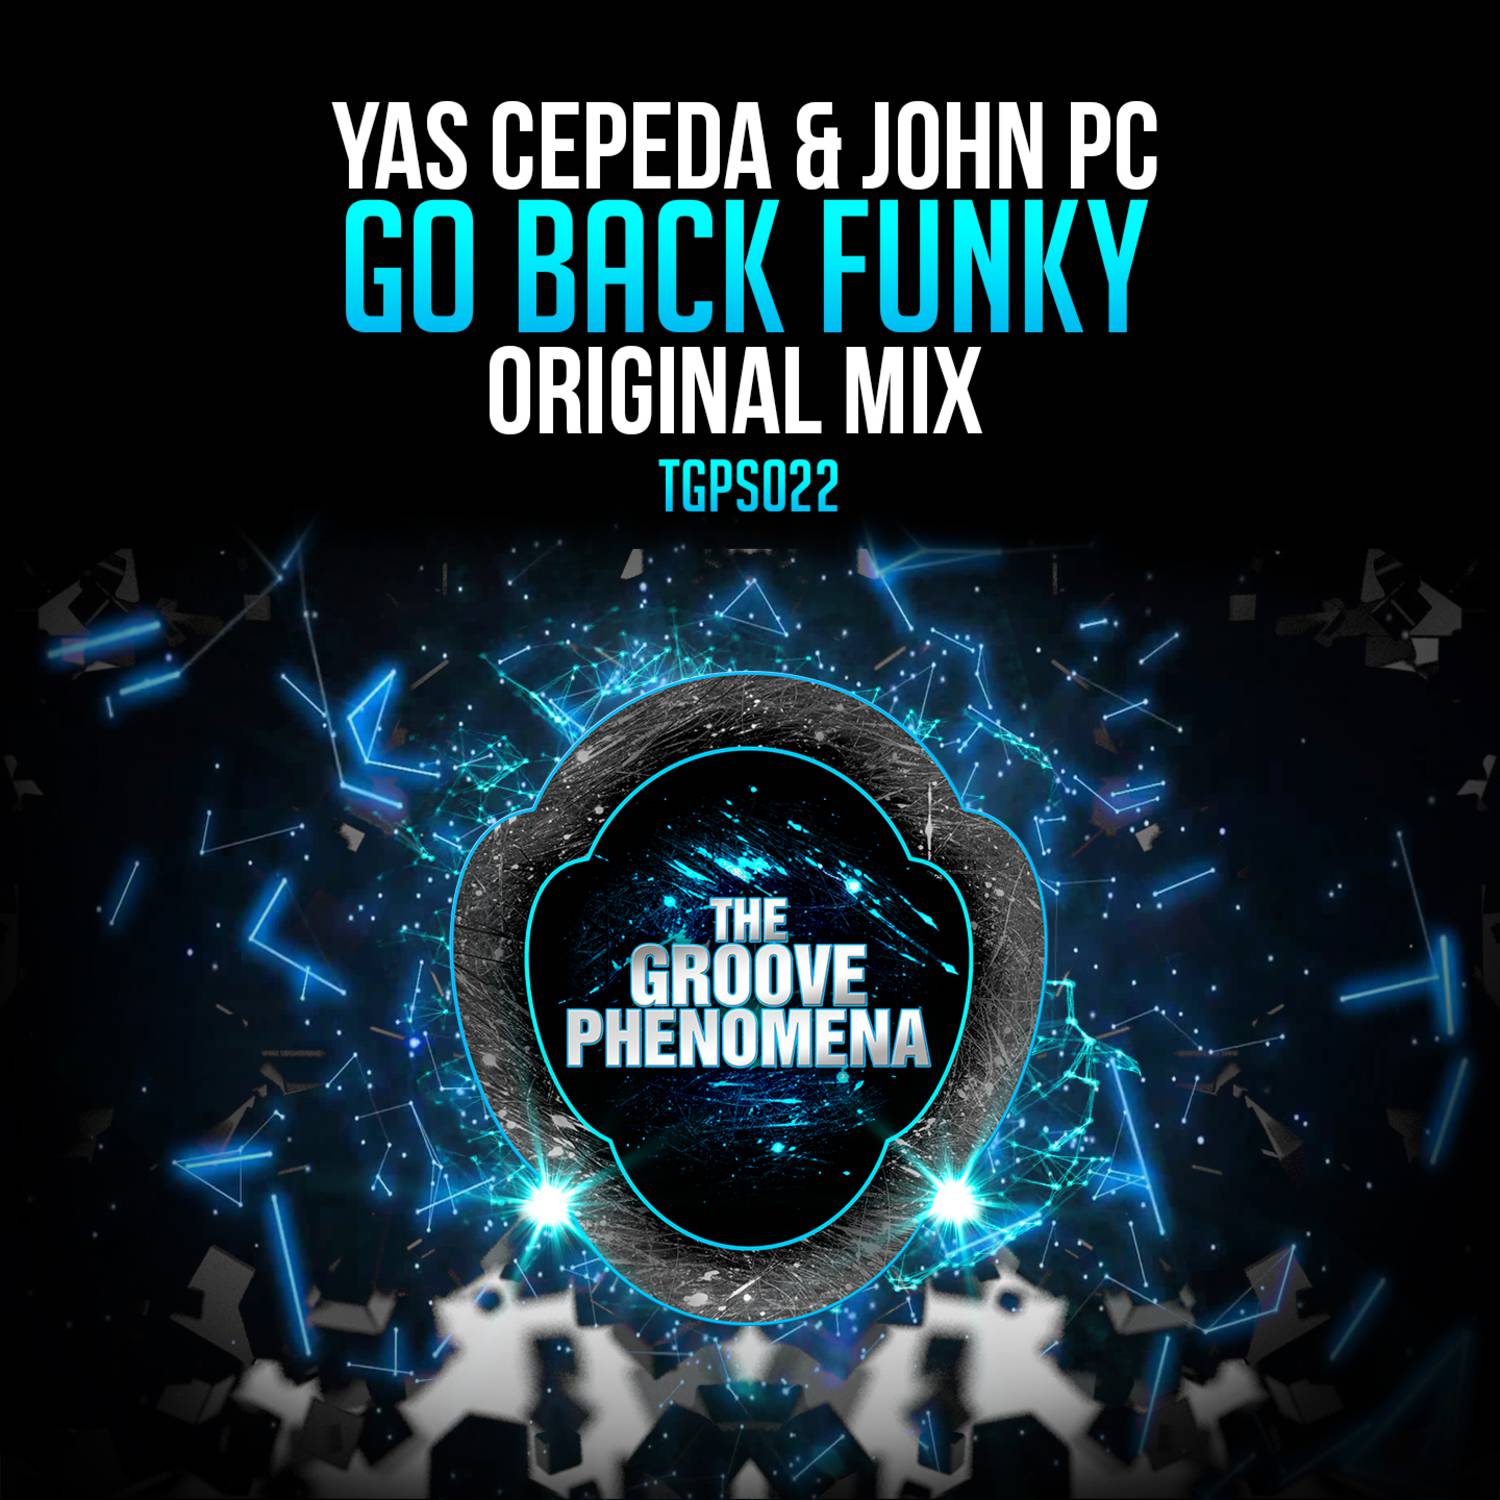 Go Back Funky (Original Mix)